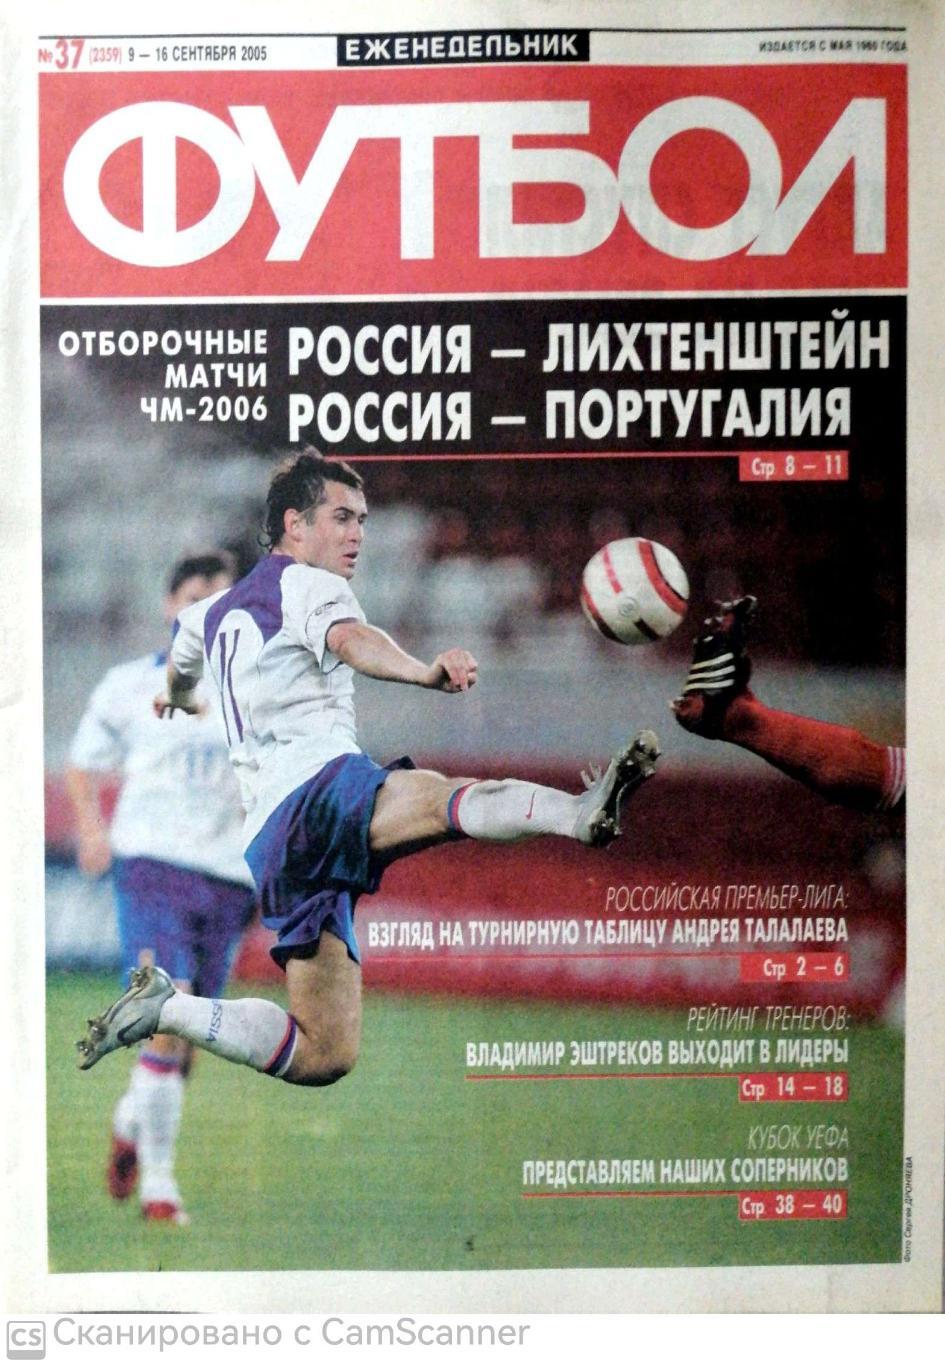 Еженедельник «Футбол» (Москва). 2005 год. №37 россия - португалия